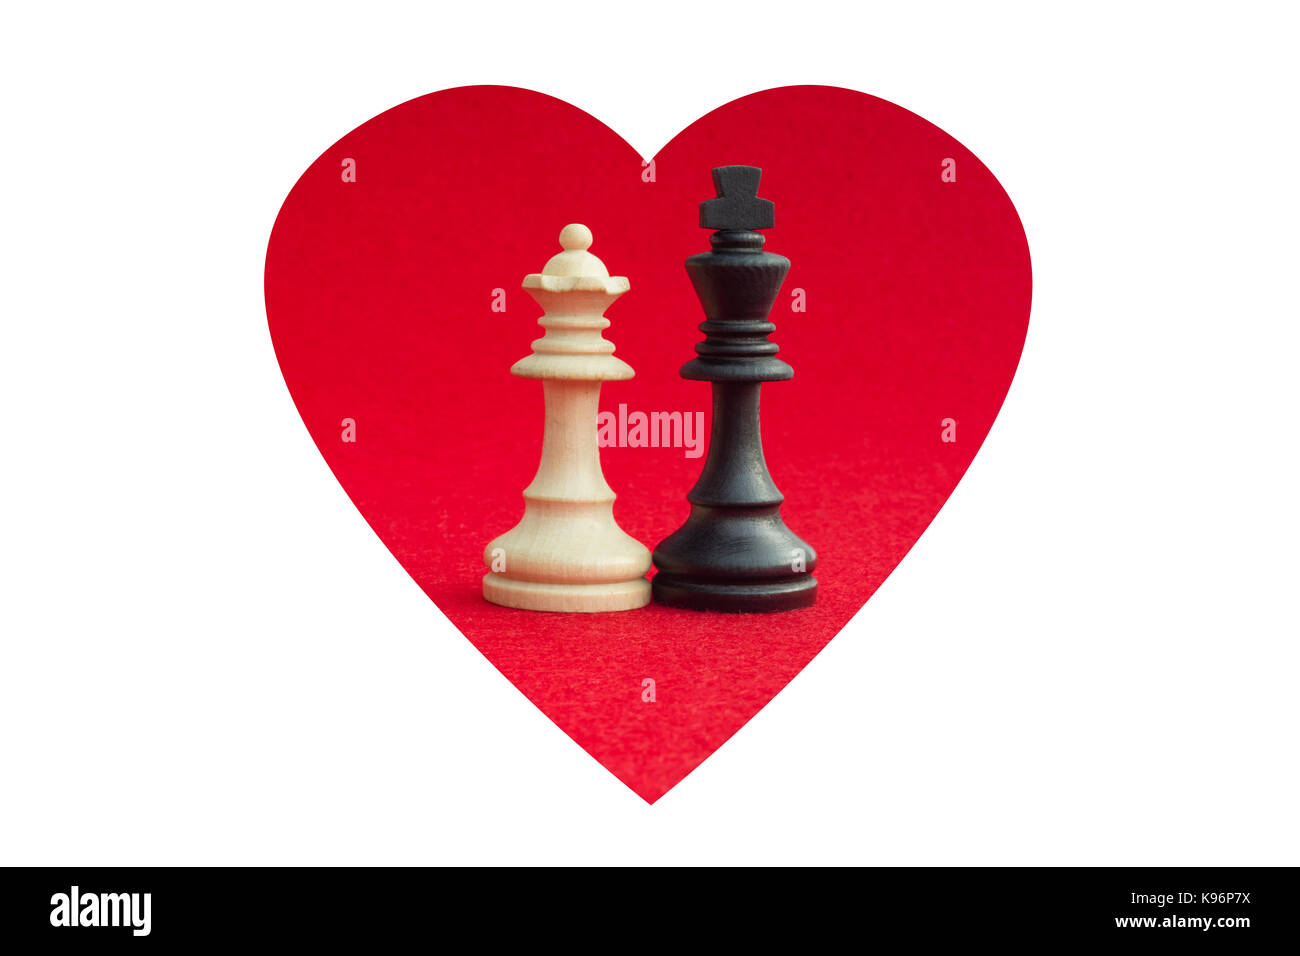 La regina bianca e il re nero, tradizionalmente affrontato nel gioco degli scacchi, sono riconciliati. immagine in isolati sullo sfondo bianco. Foto Stock